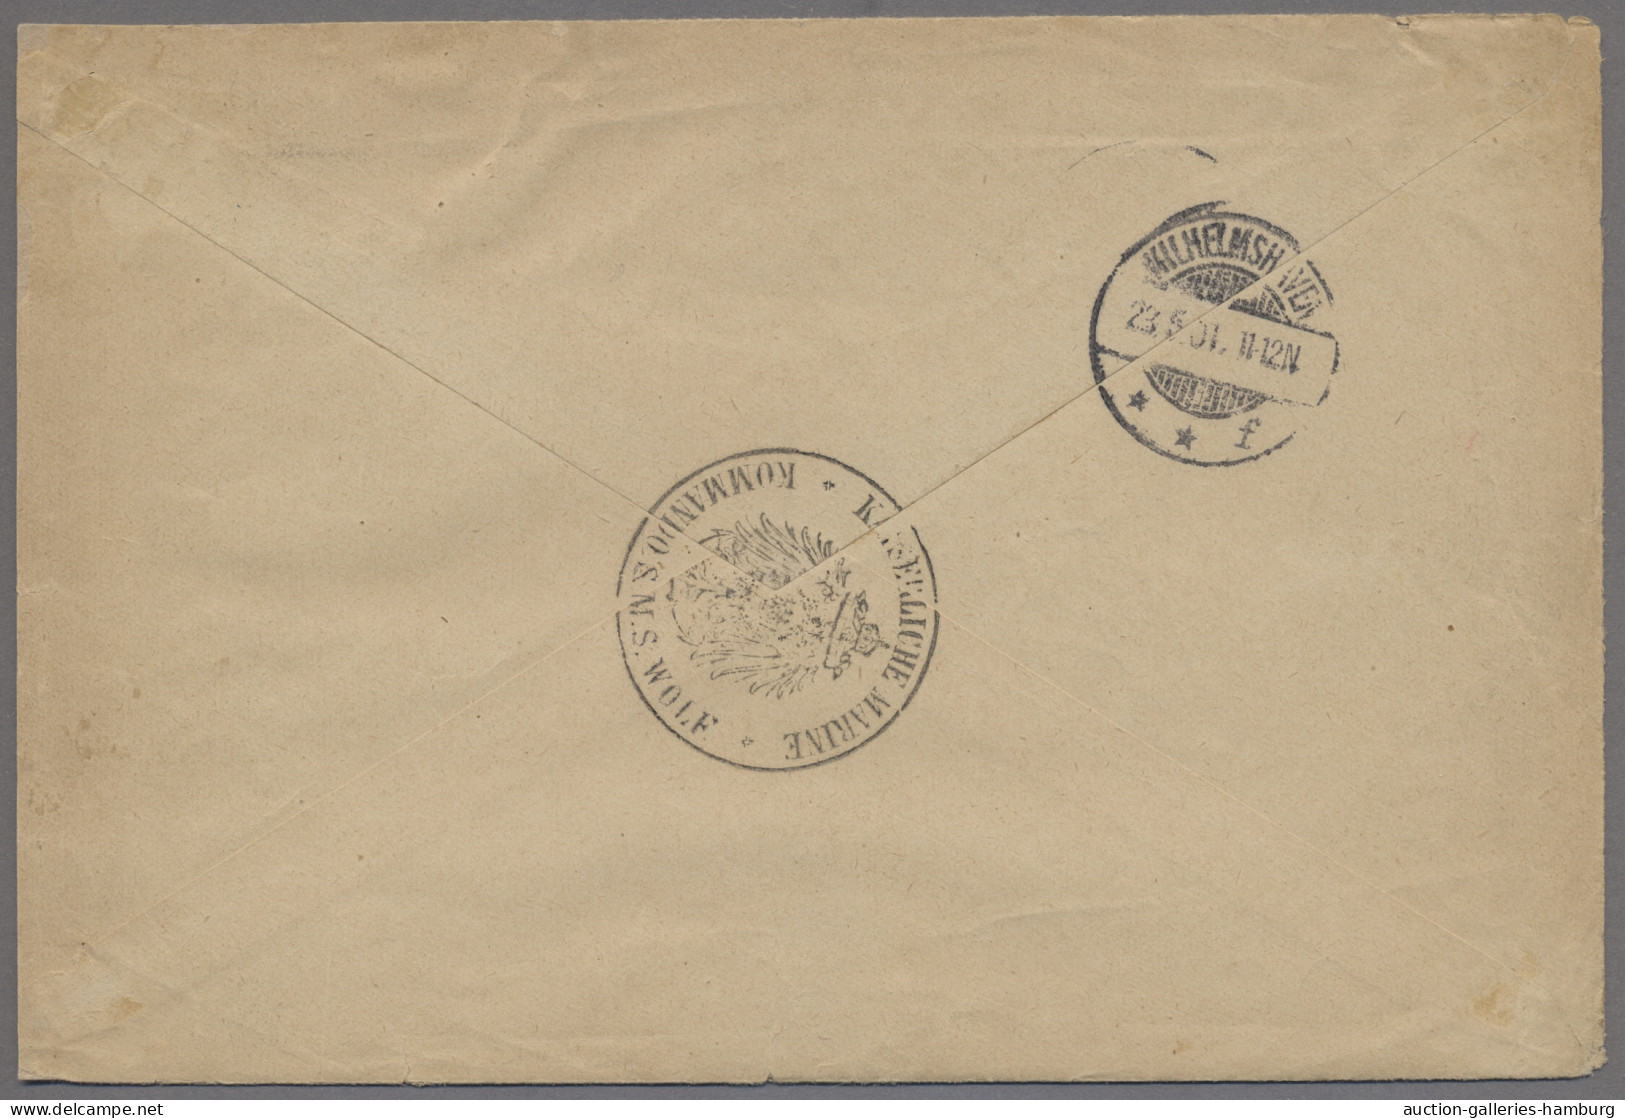 Deutsche Kolonien - Kamerun - Stempel: 1901, MSP No. 22, SMS Wolf, Dienstbrief M - Cameroun